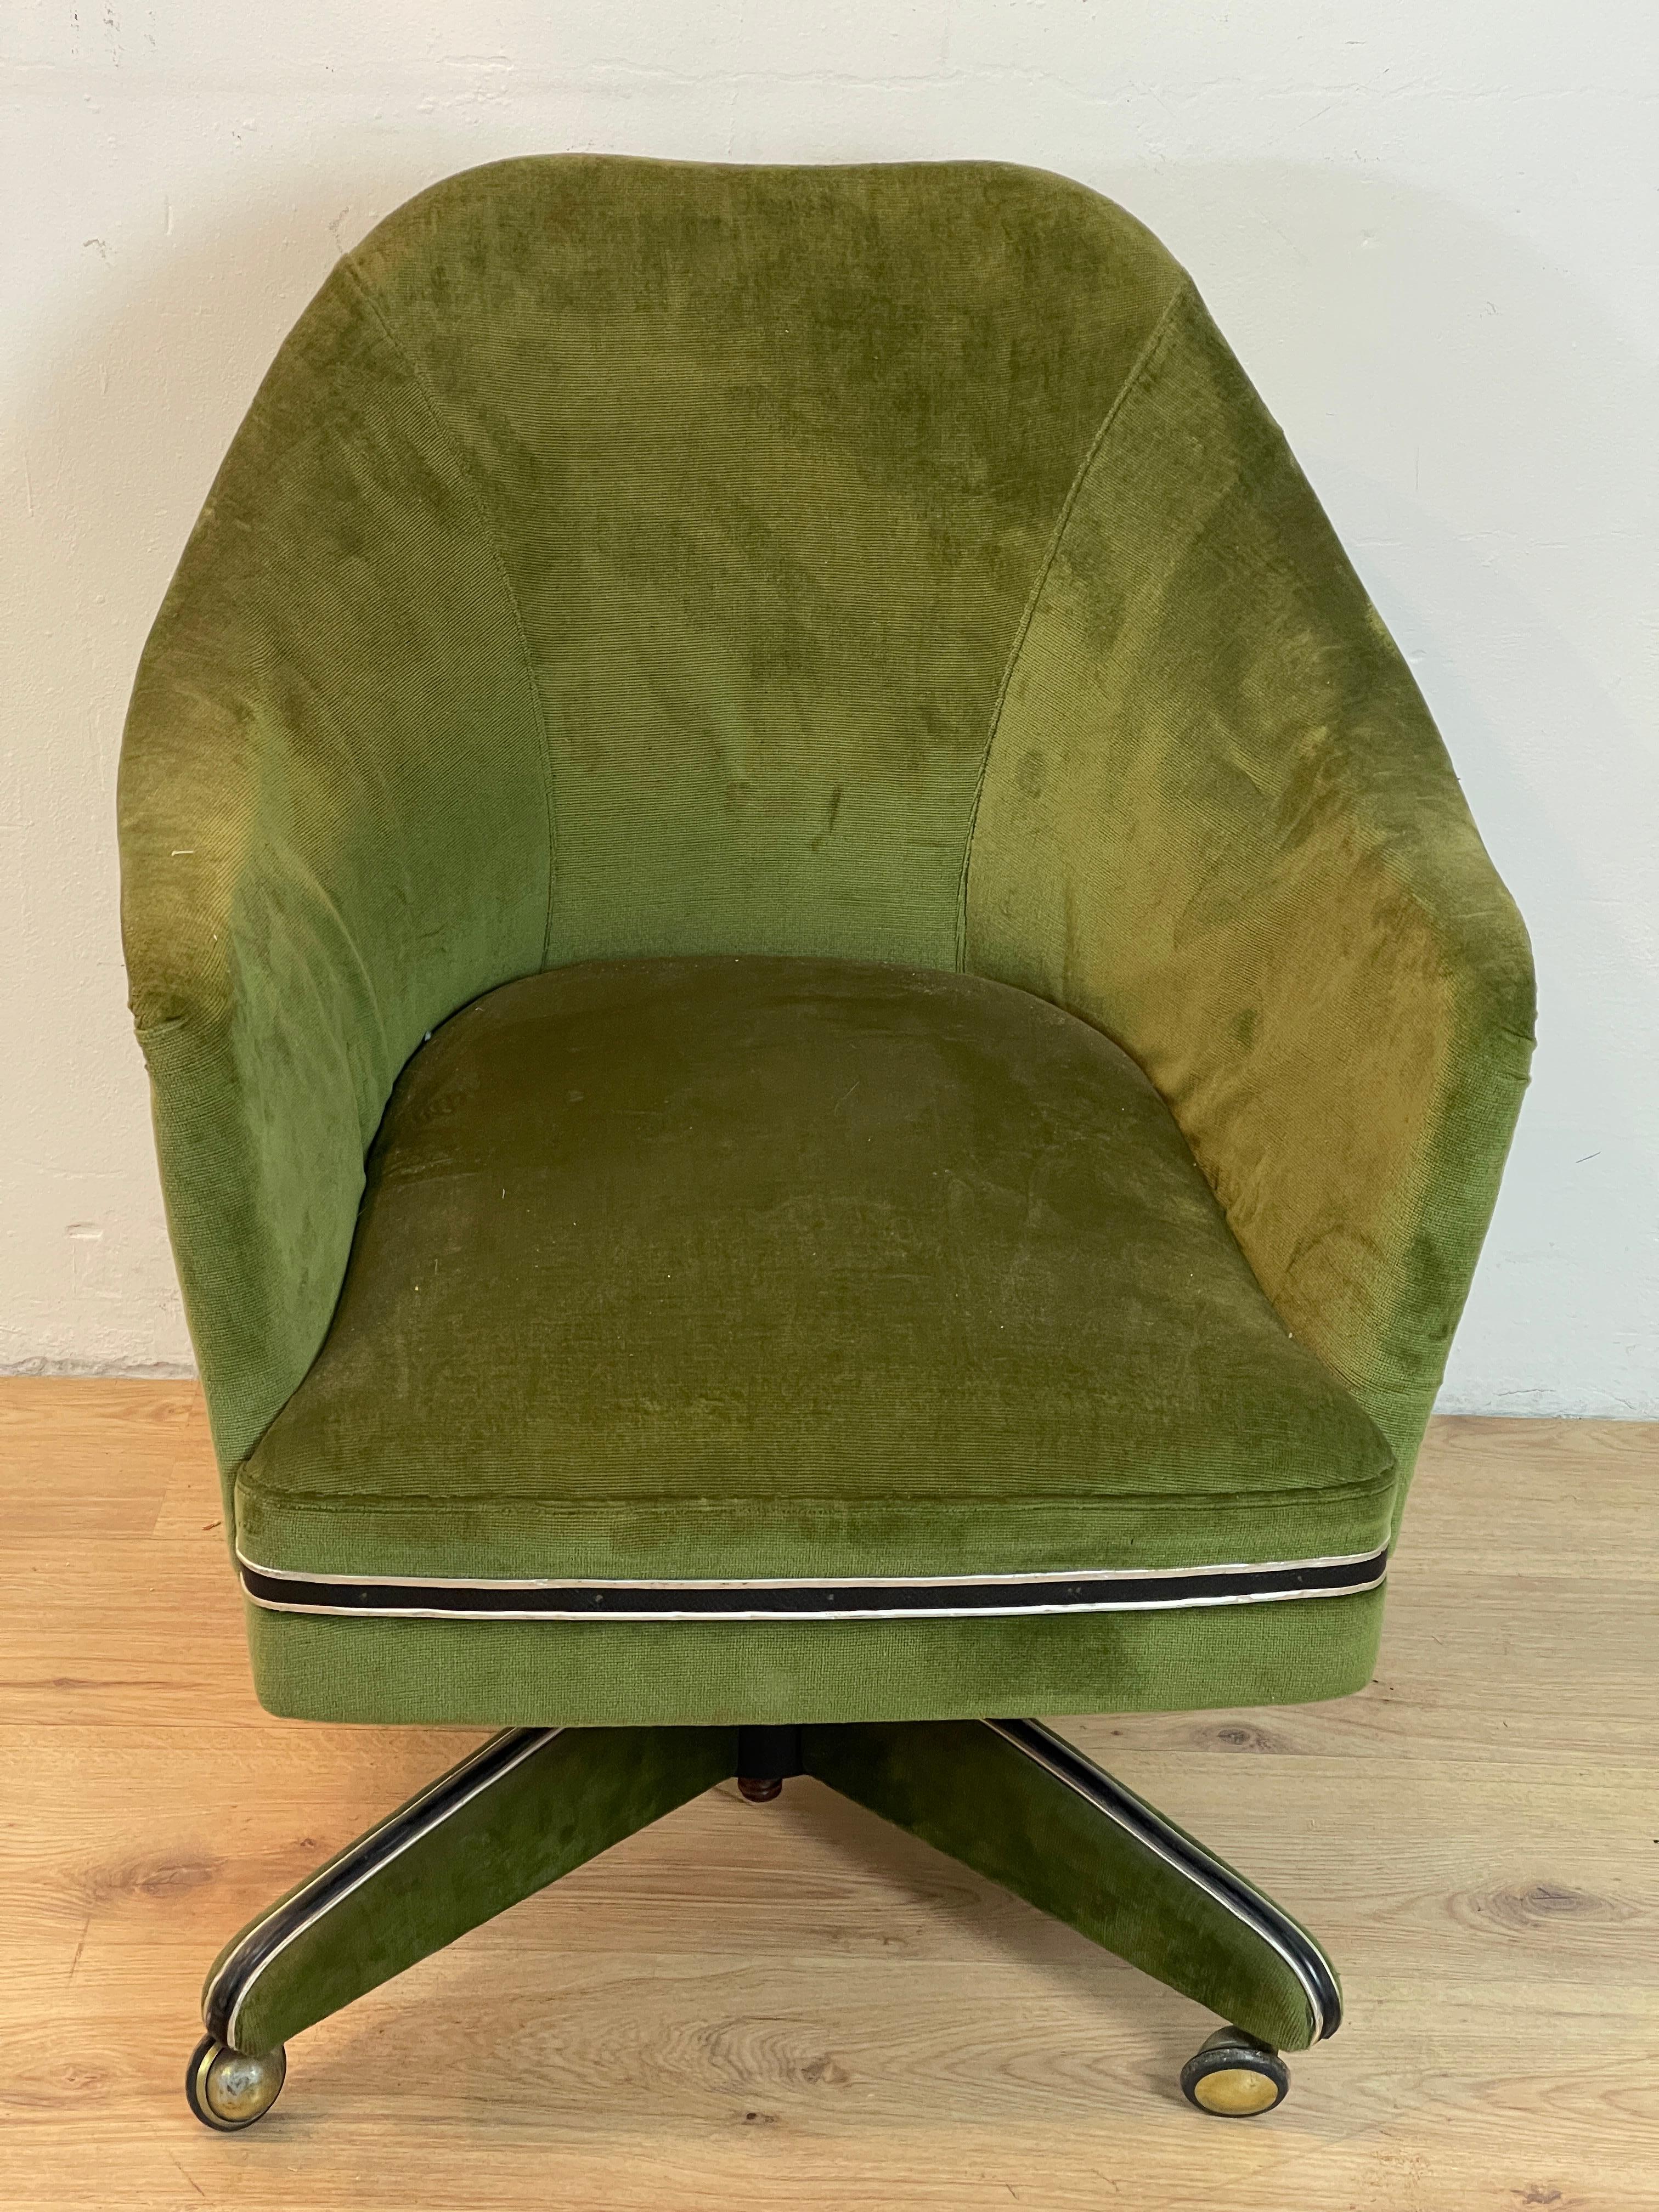 Schreibtischsessel in grünem Stoff, in der Höhe verstellbar, mit Rädern ausgestattet, alle arbeiten und in sehr gutem Zustand, ist das Modell der Sessel auf die Firma spezialisiert in Design-Büromöbel Anonima Castelli zurückzuführen.